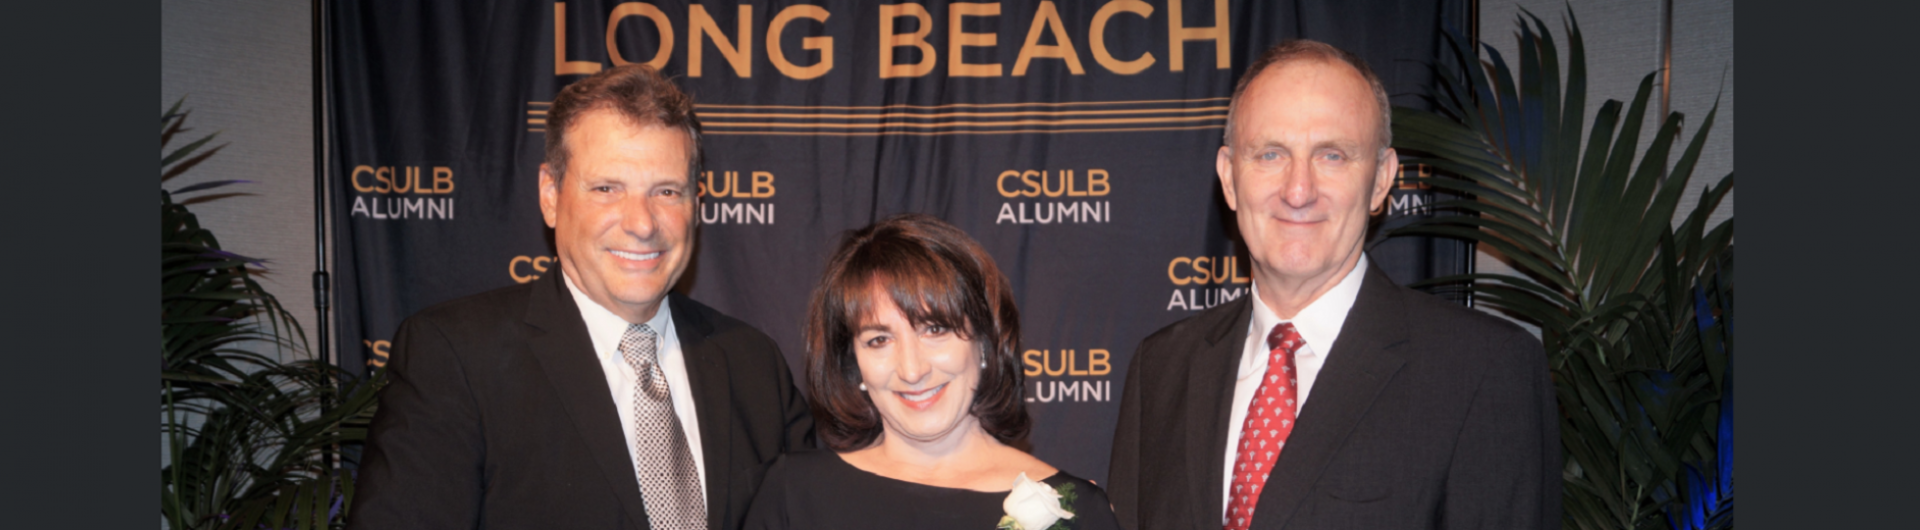 COB 2019 Distinguished Alumni Banquet 